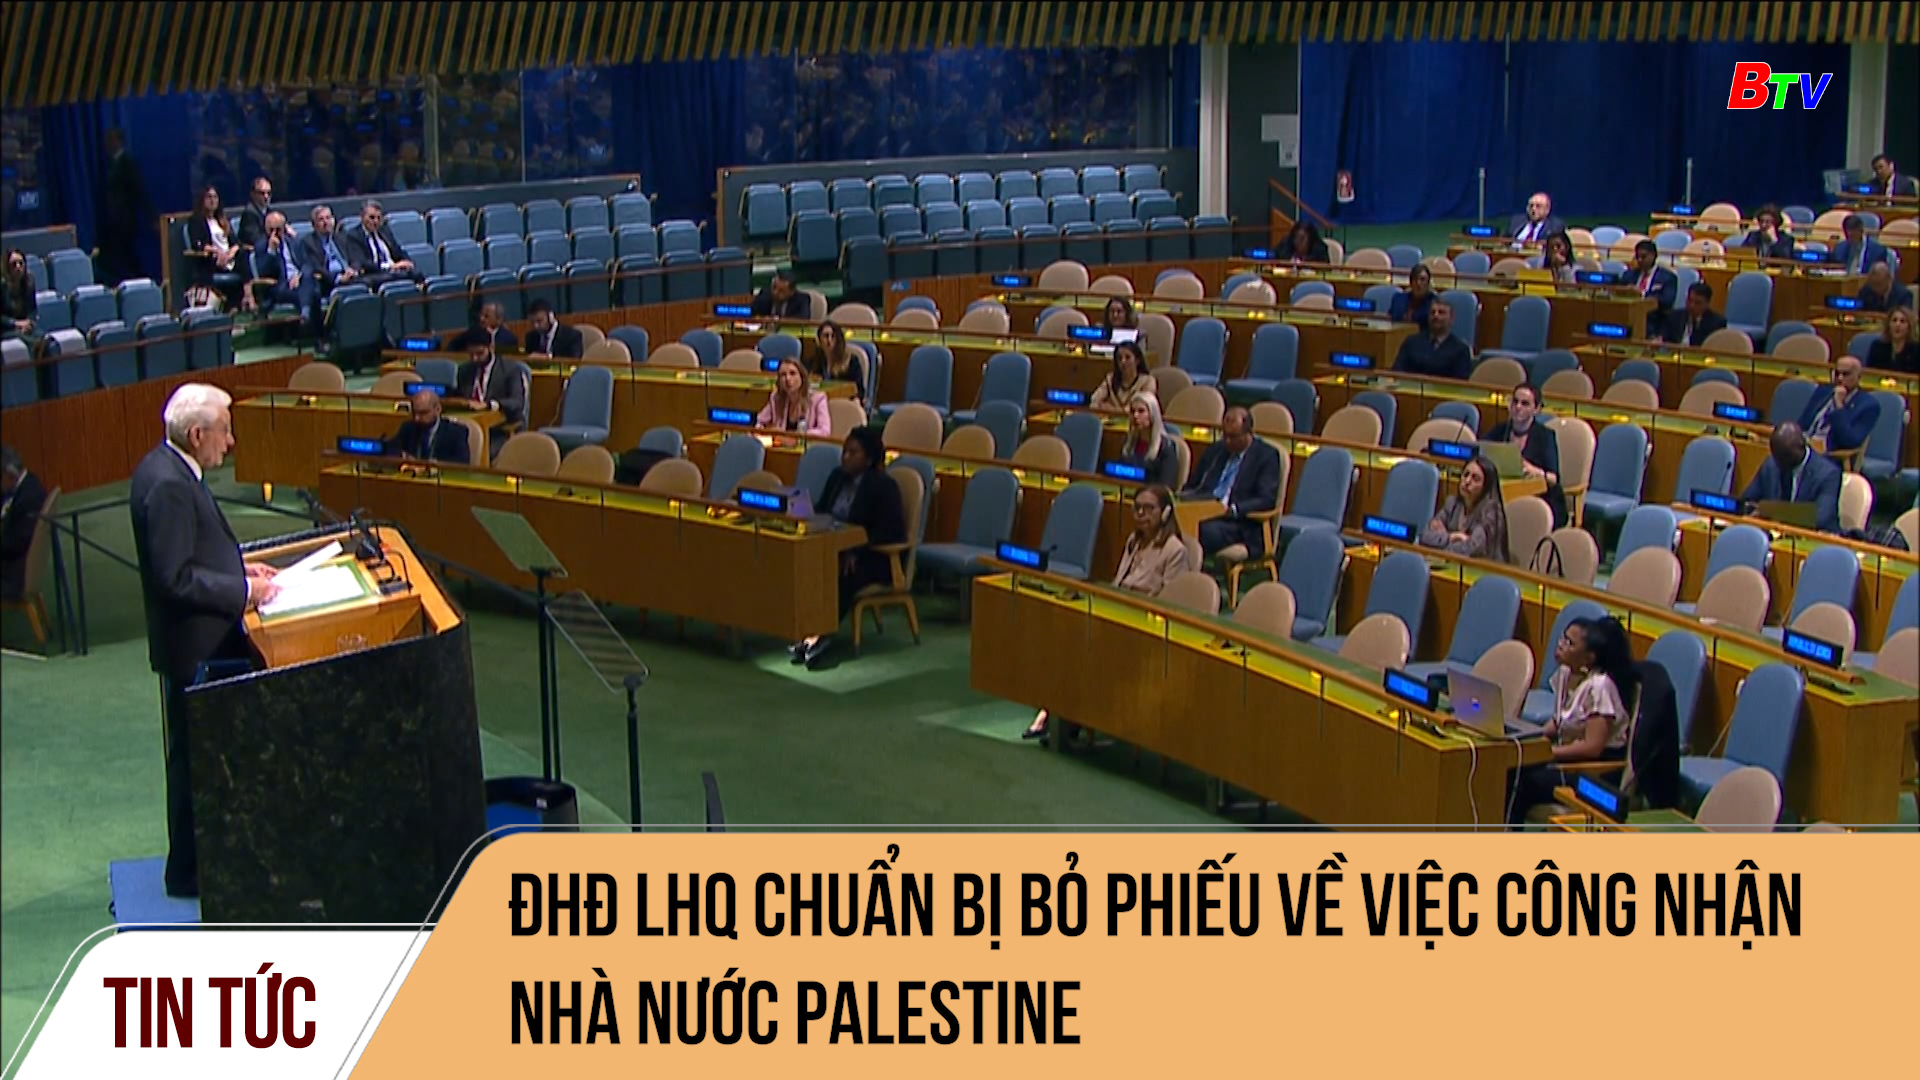 Đại hội đồng Liên hợp quốc chuẩn bị bỏ phiếu về việc công nhận nhà nước Palestine